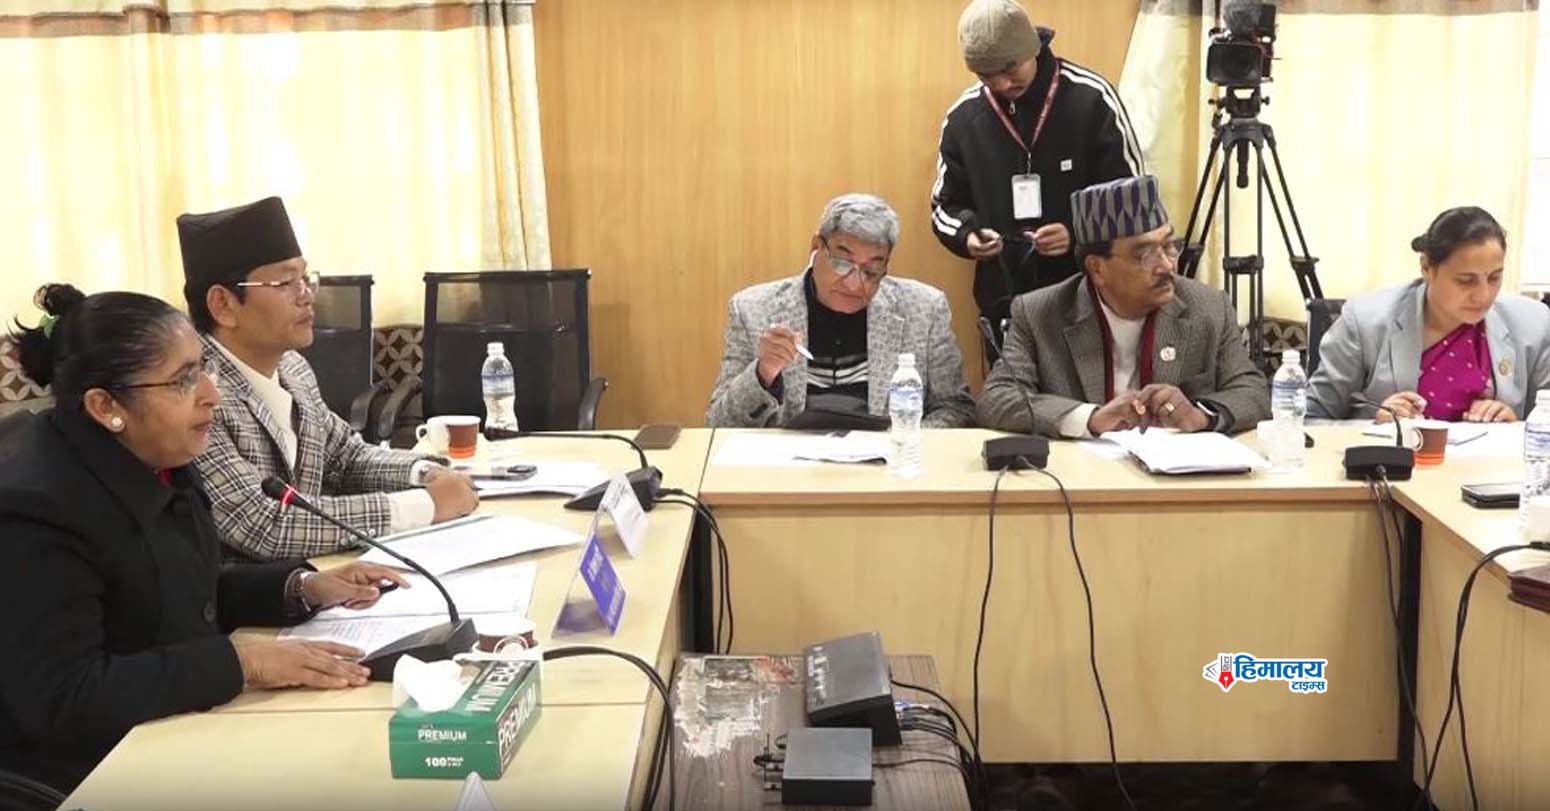 आगामी अधिवेशनको पहिलो दिन नै टिआरसी विधेयक संसदमा पेस गर्नुपर्छ : रमेश लेखक